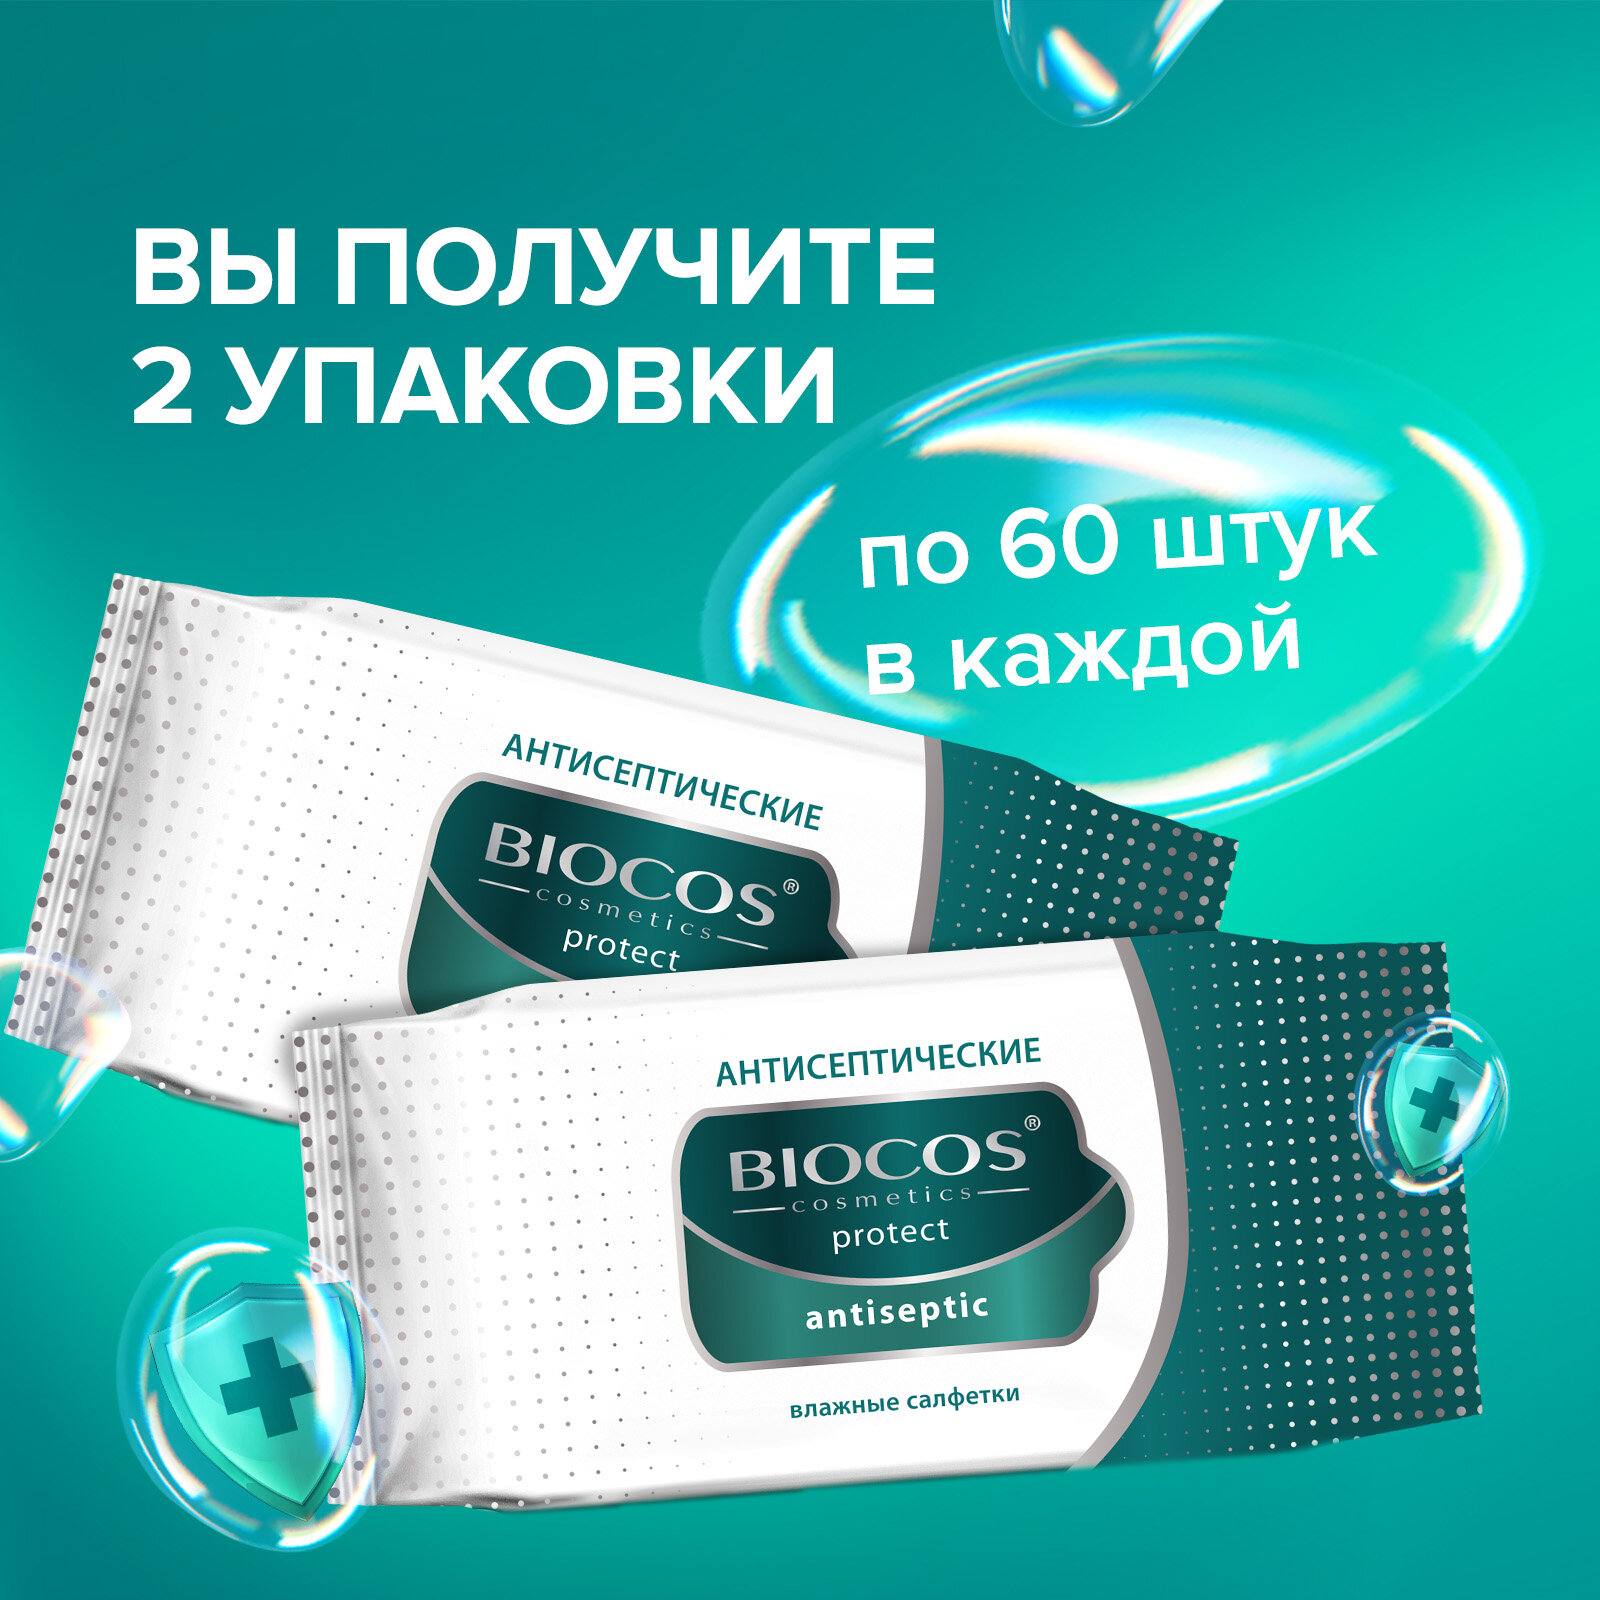 Влажные салфетки Biocos Antiseptic антисептические для гигиены рук со спиртовым лосьоном, 120 штук